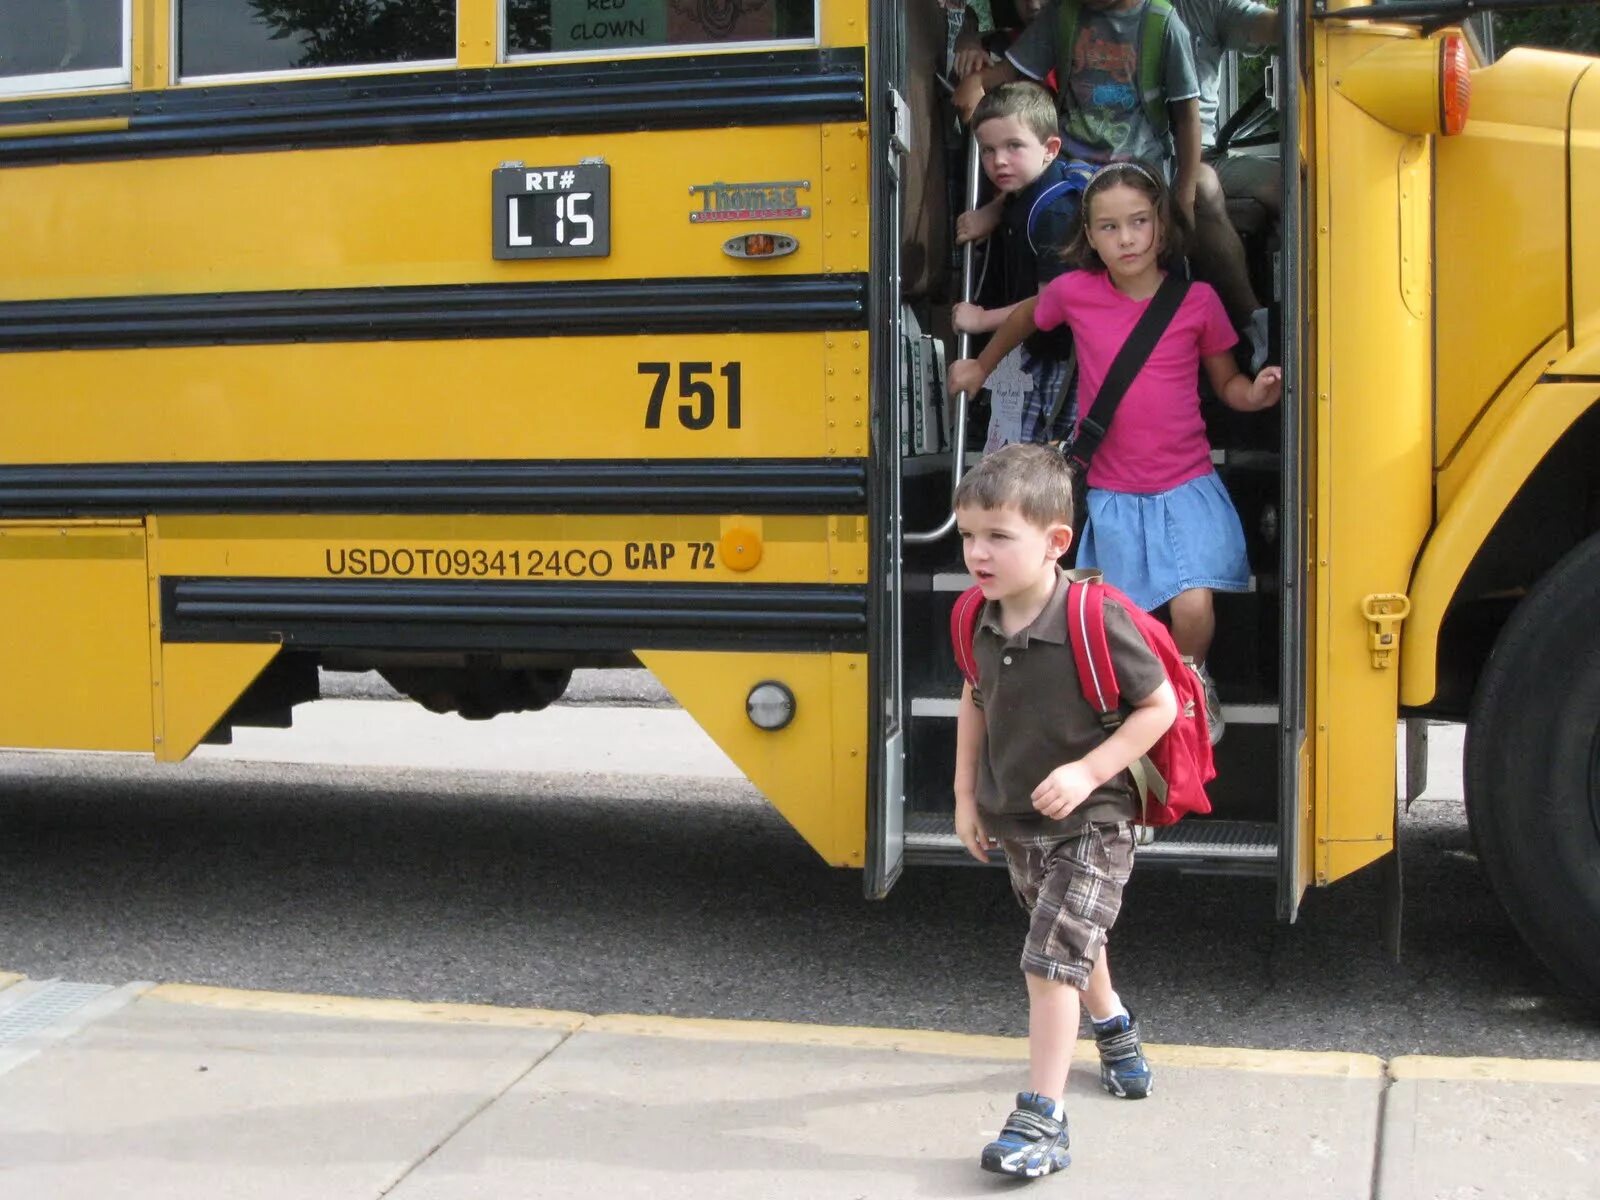 Выходить из автобуса. Лети выходят из автобуса. Дети виходят из автобус. Девушка выходит из автобуса.